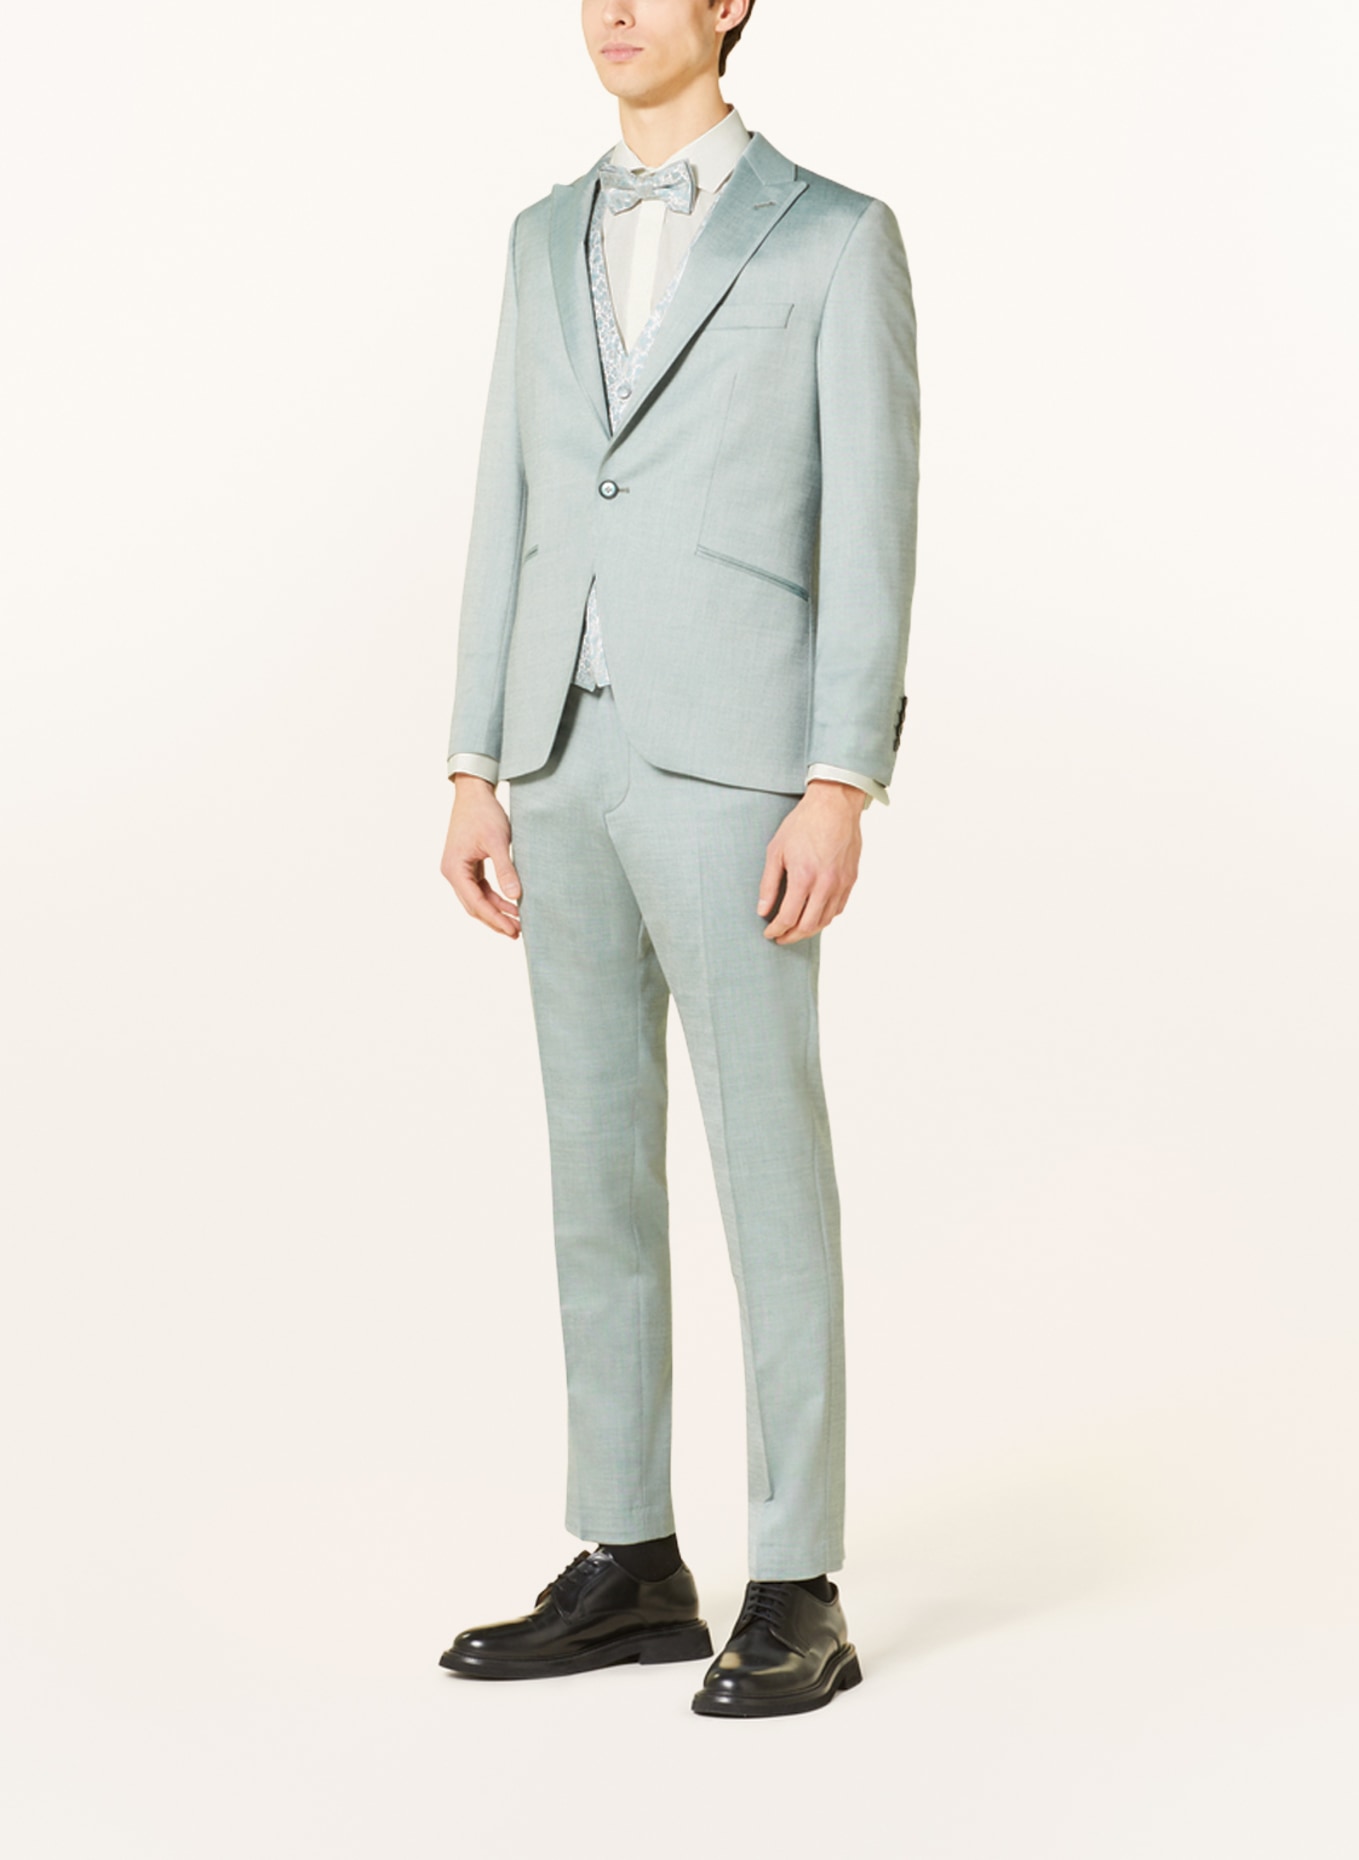 WILVORST Suit vest slim fit, Color: MINT (Image 2)